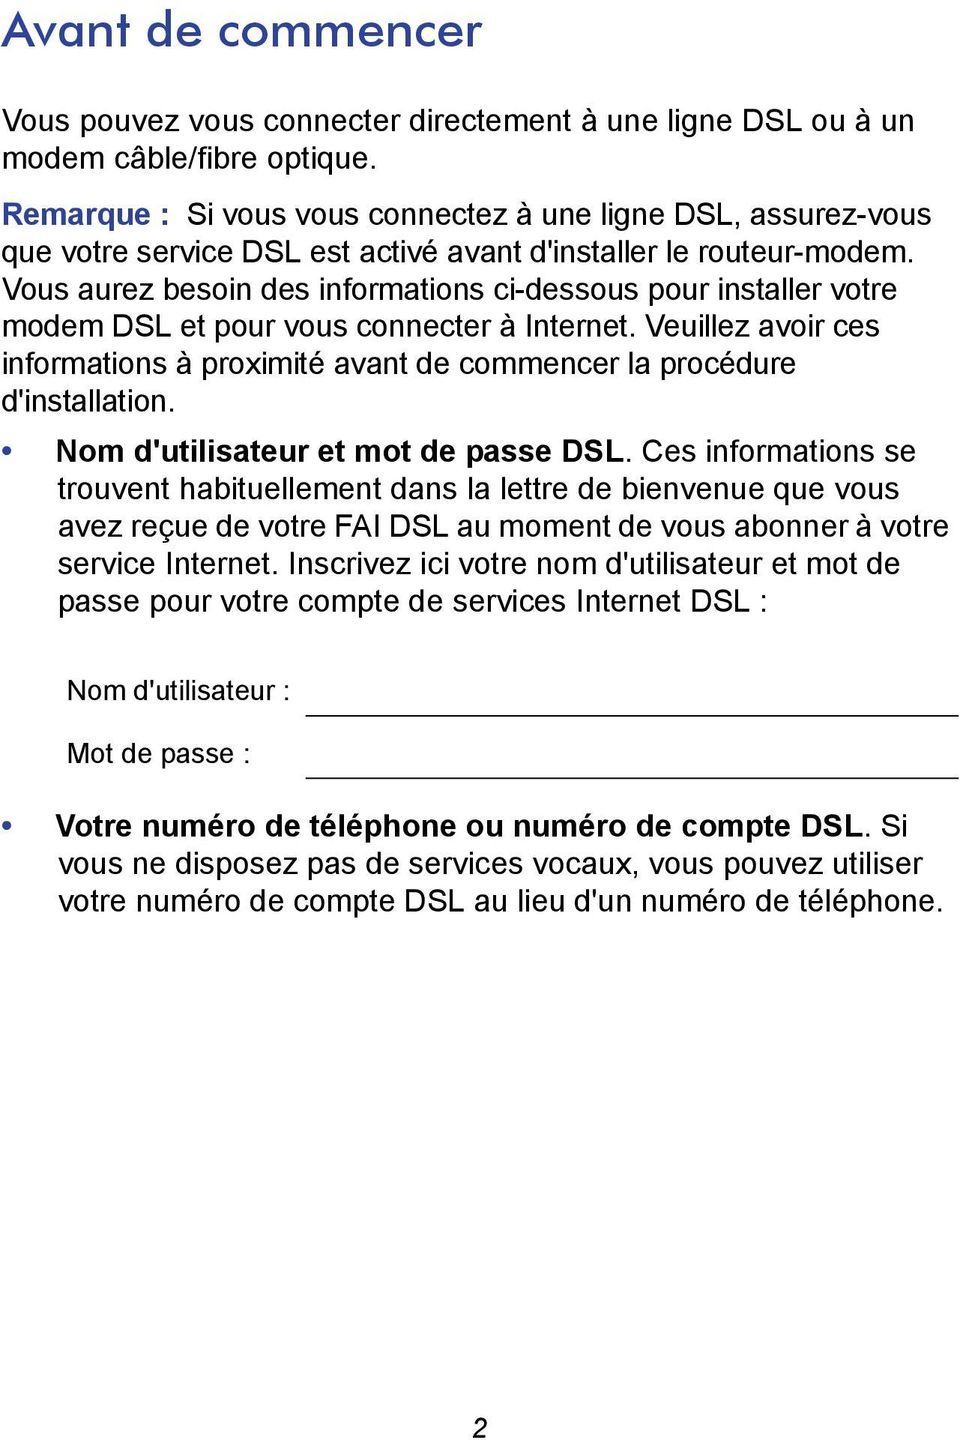 Vous aurez besoin des informations ci-dessous pour installer votre modem DSL et pour vous connecter à Internet.